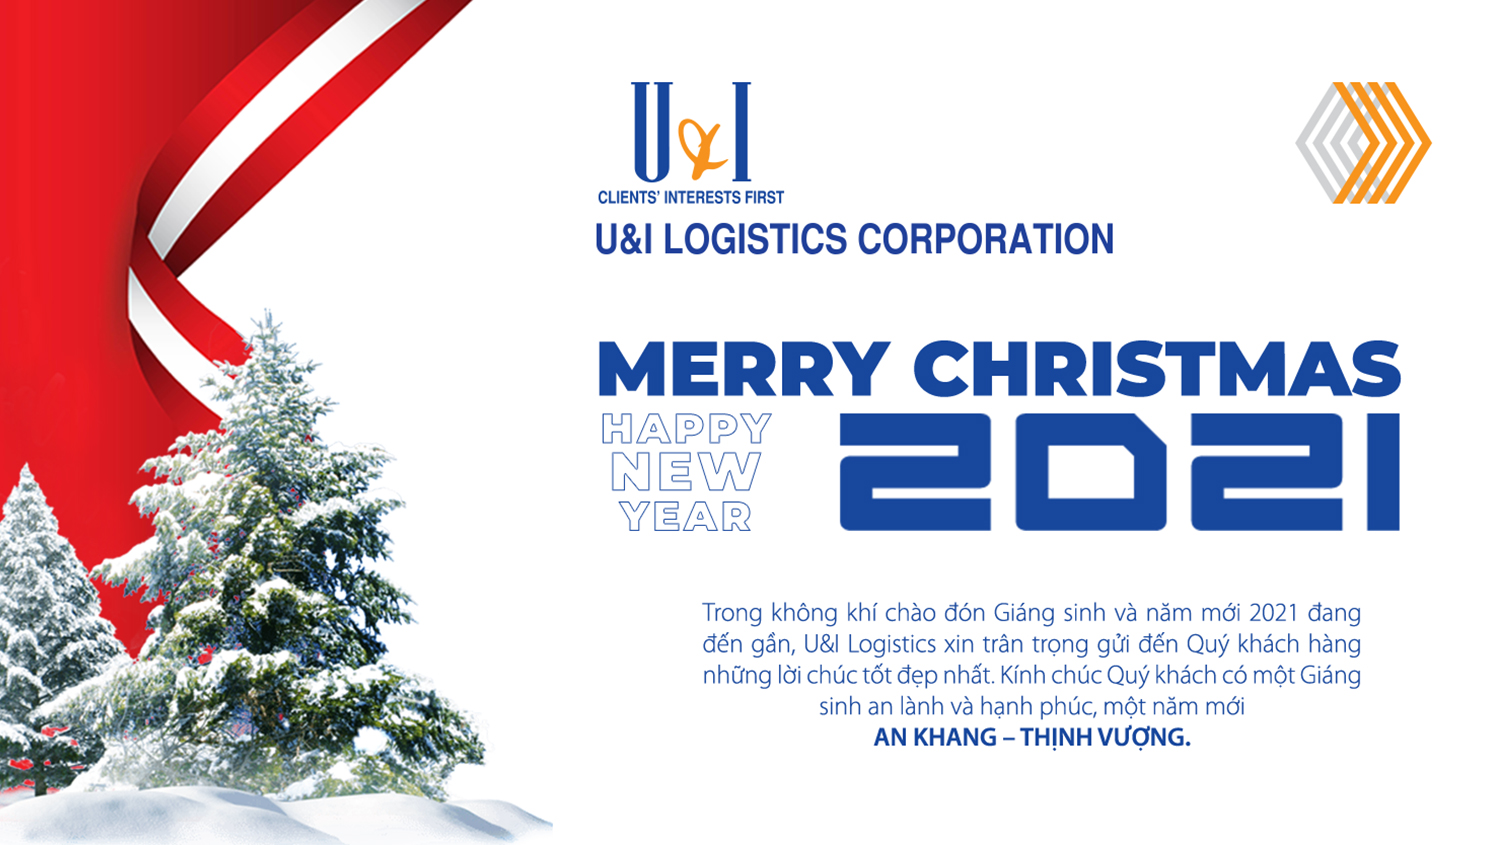 Merry Christmas 2021 - U&I Logistics Corporation